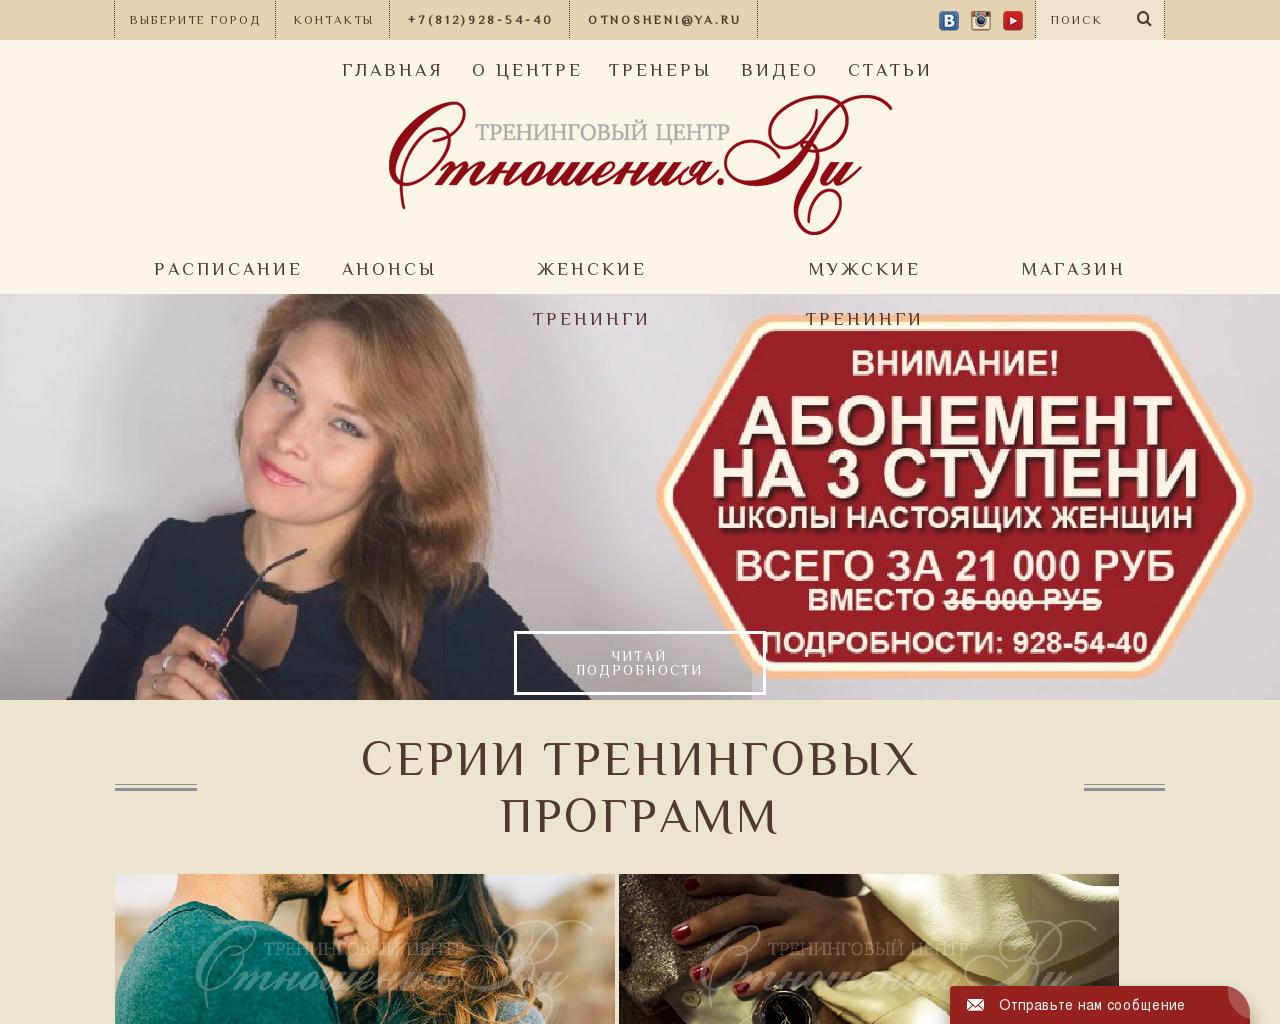 Изображение сайта otnosheniya.ru в разрешении 1280x1024